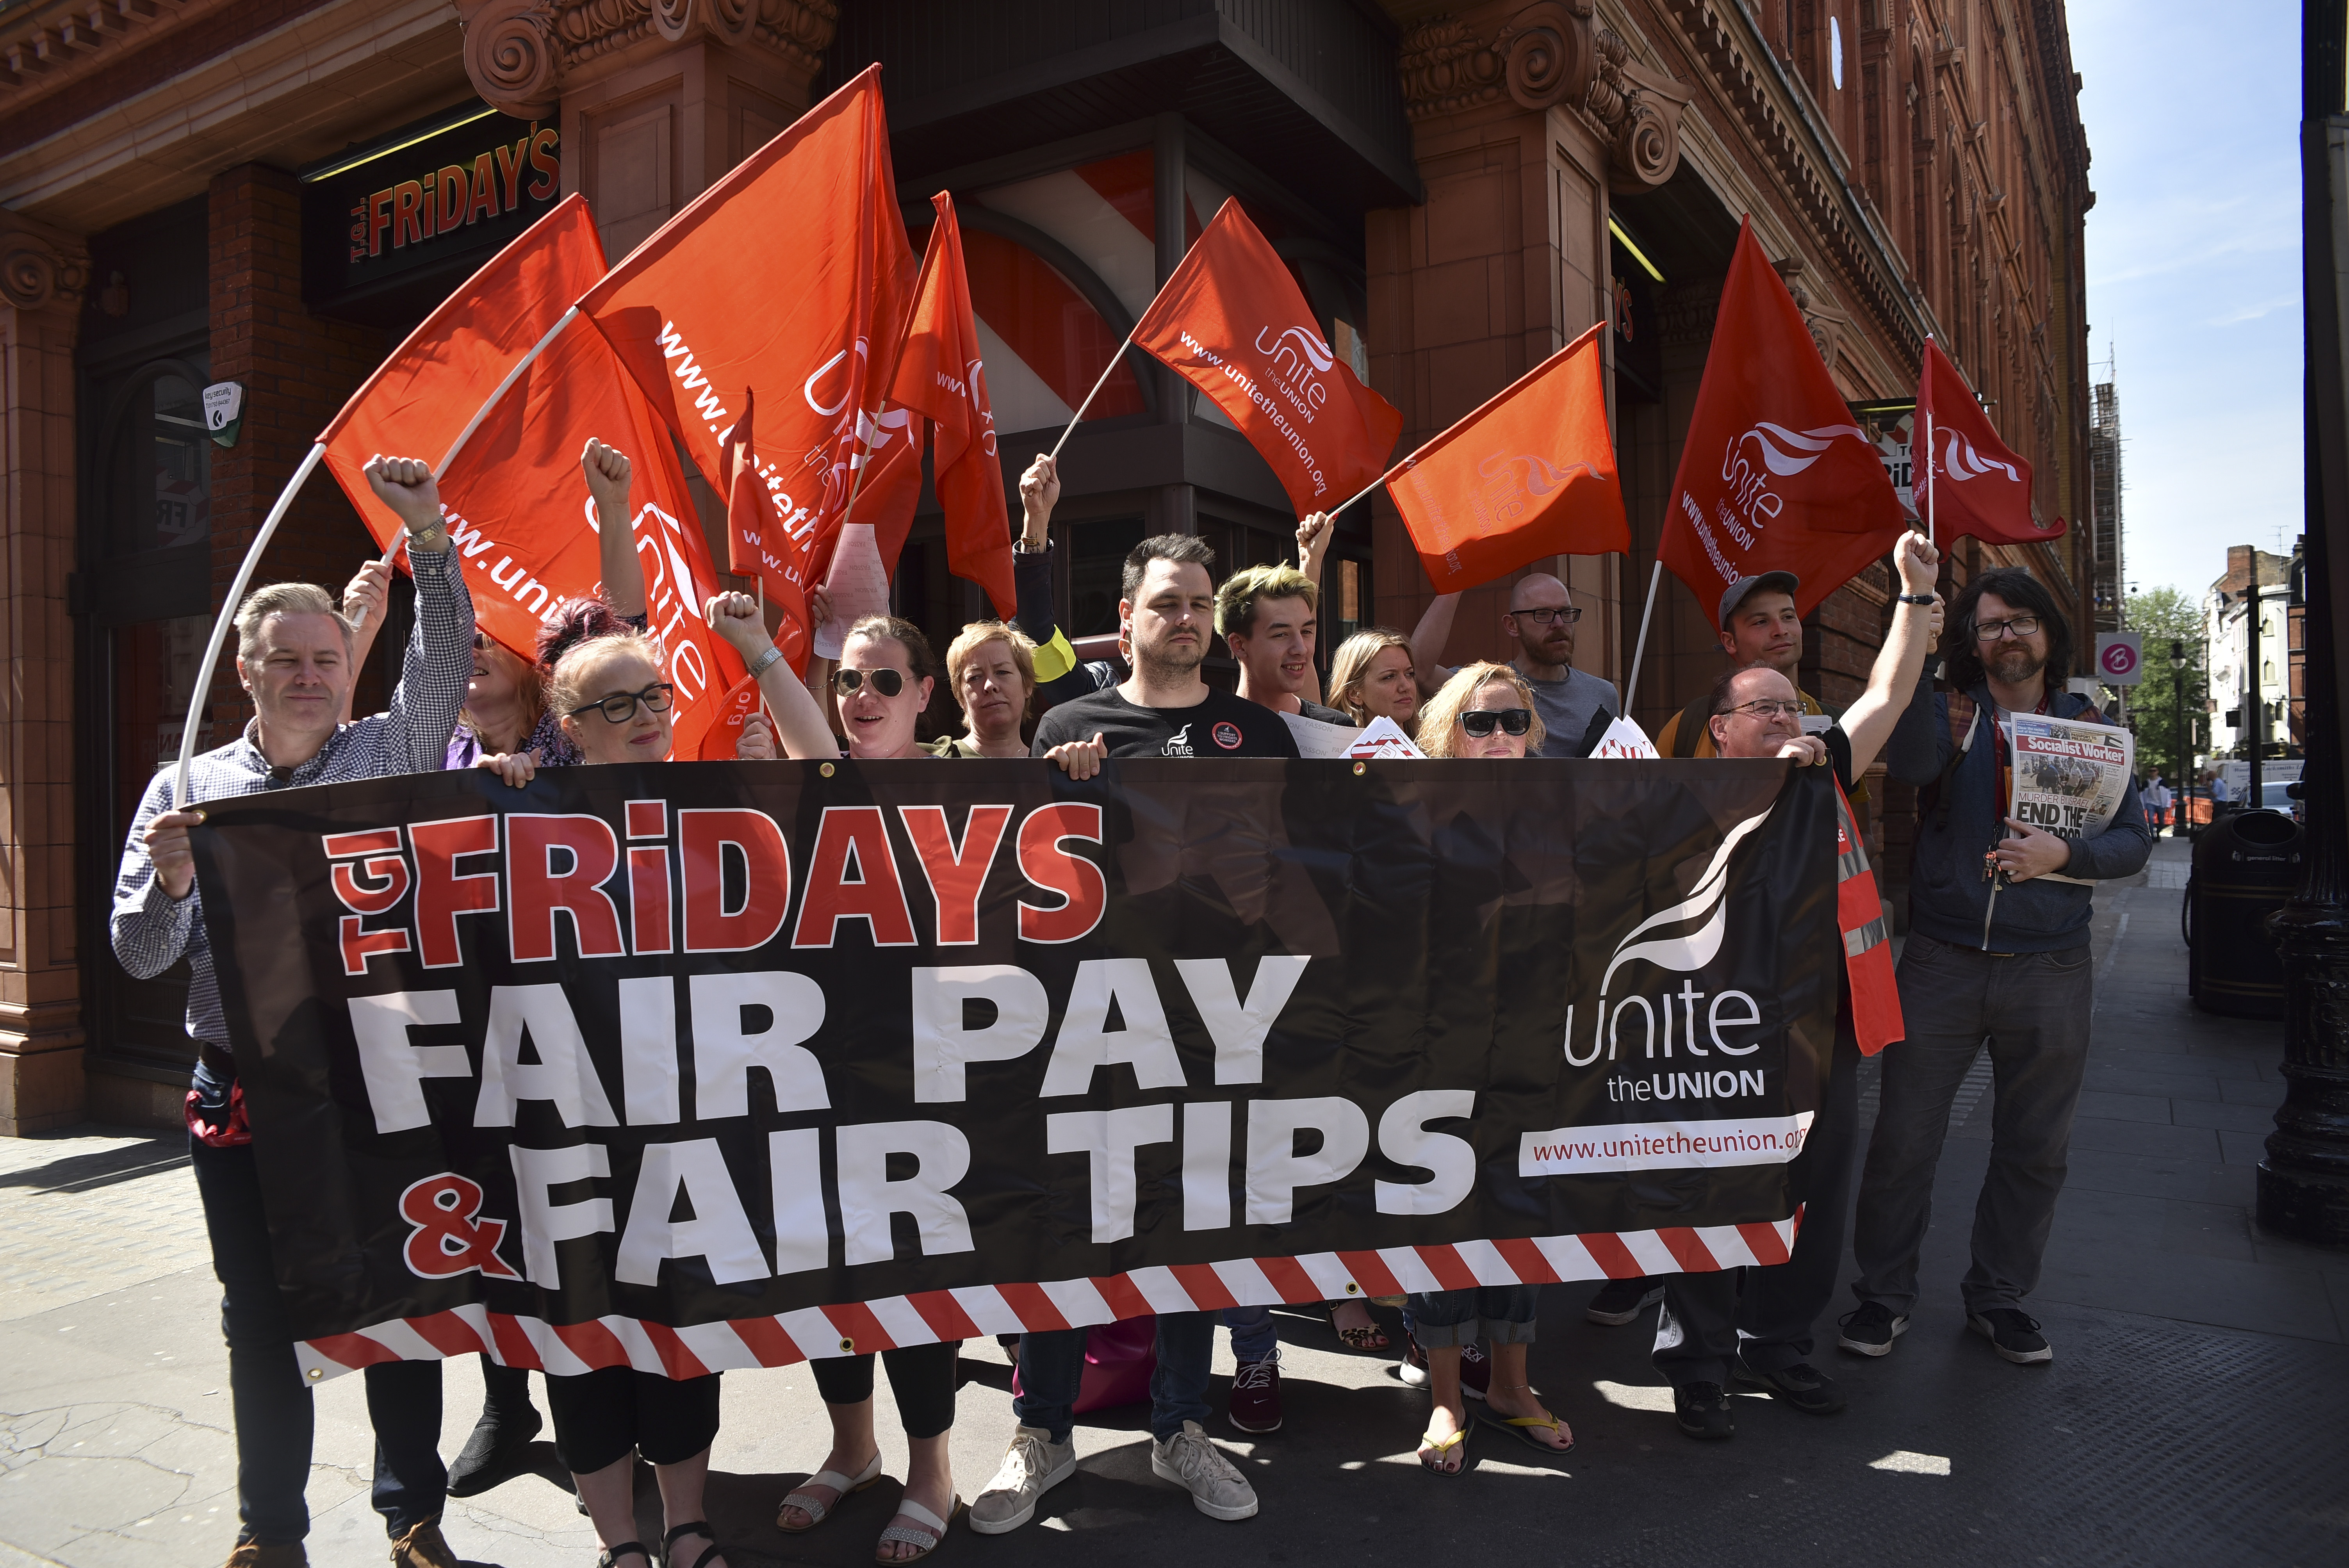 Megalázóan alacsony bérük miatt nemzetközi sztrájkba kezdtek a gyorséttermi dolgozók